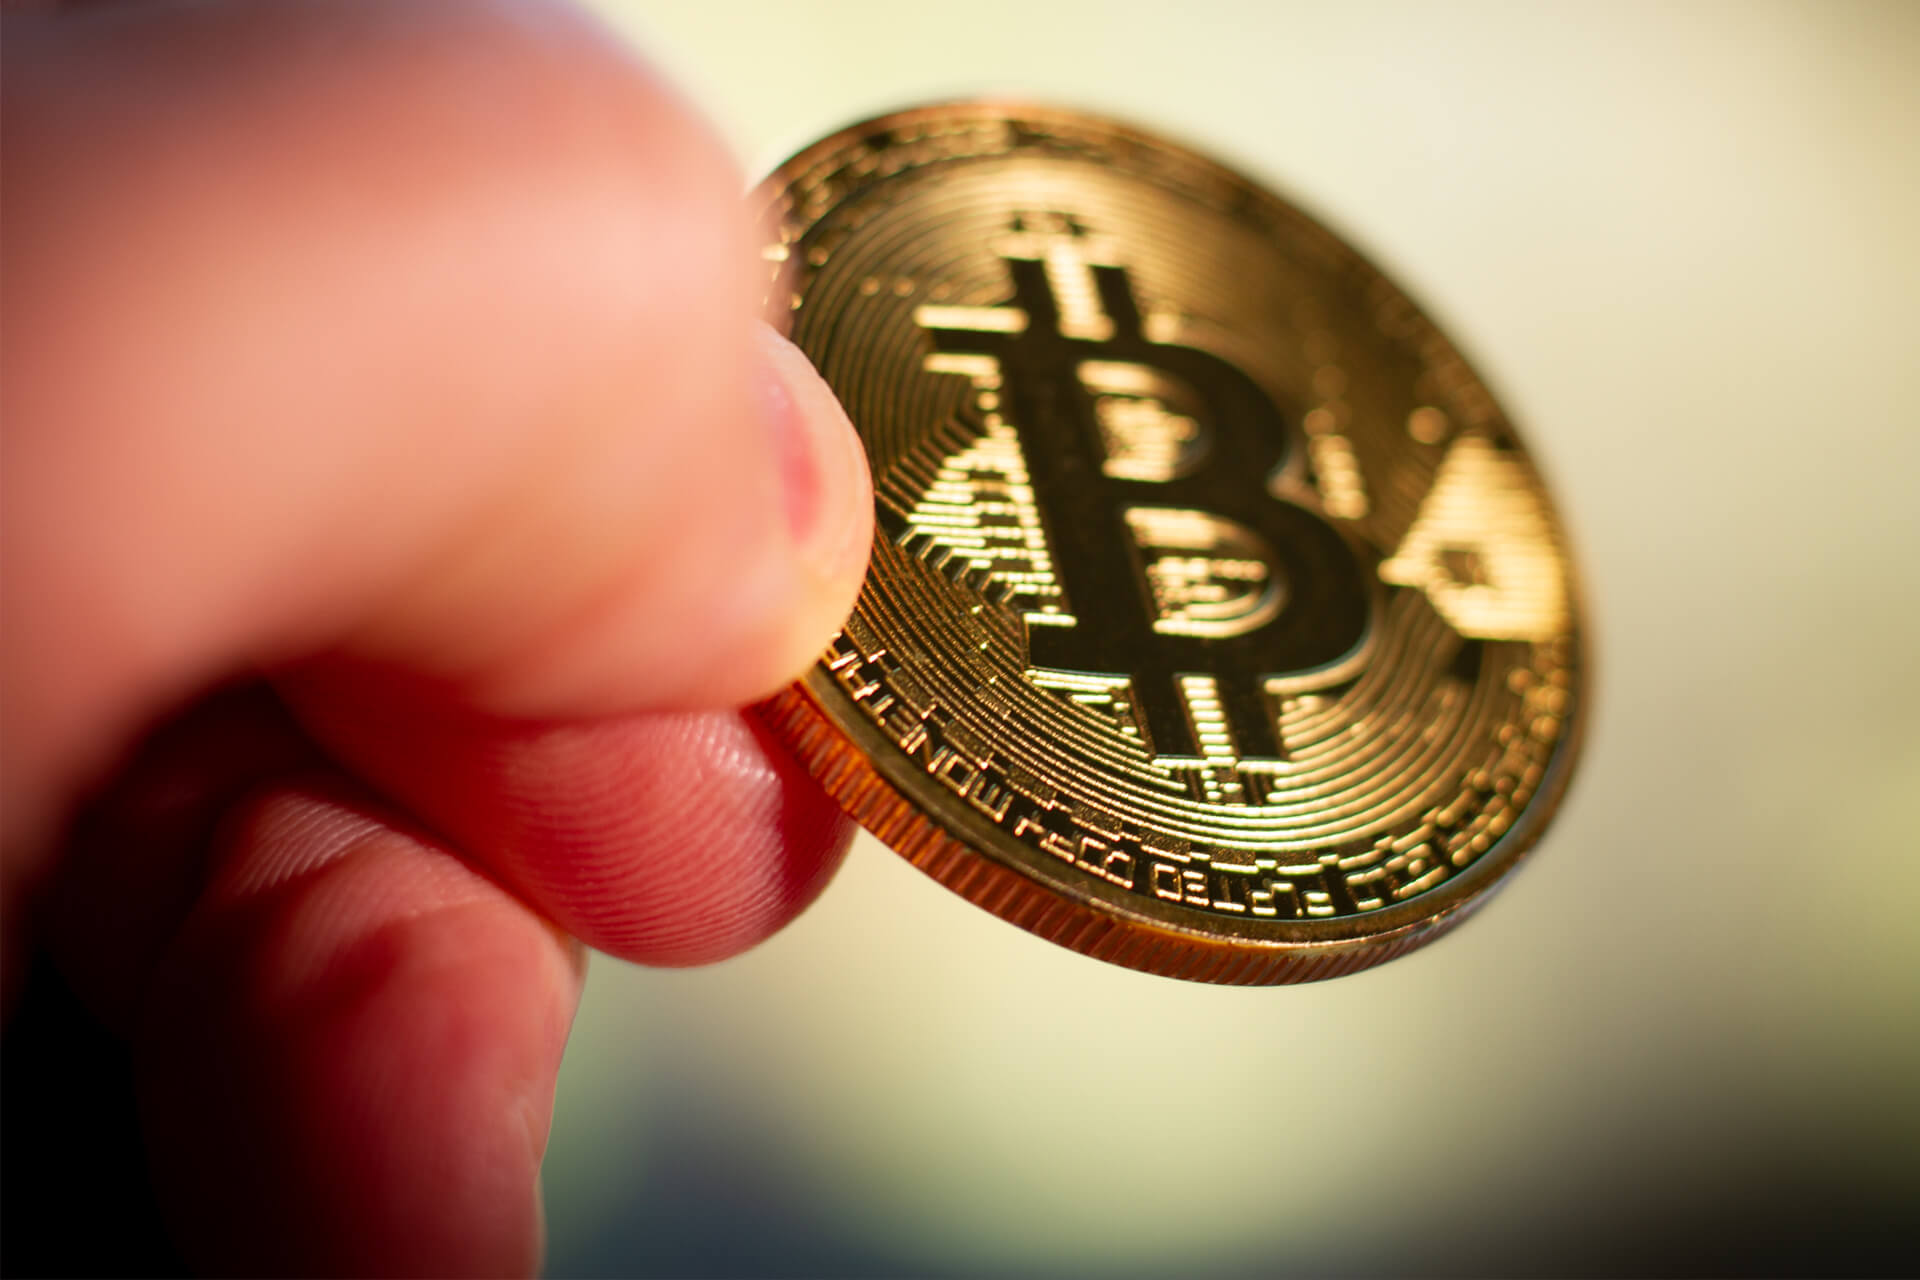 Félmilliárd forintot ad vissza egy kábítószer-kereskedőnek a svéd állam, mert emelkedett a bitcoin árfolyama